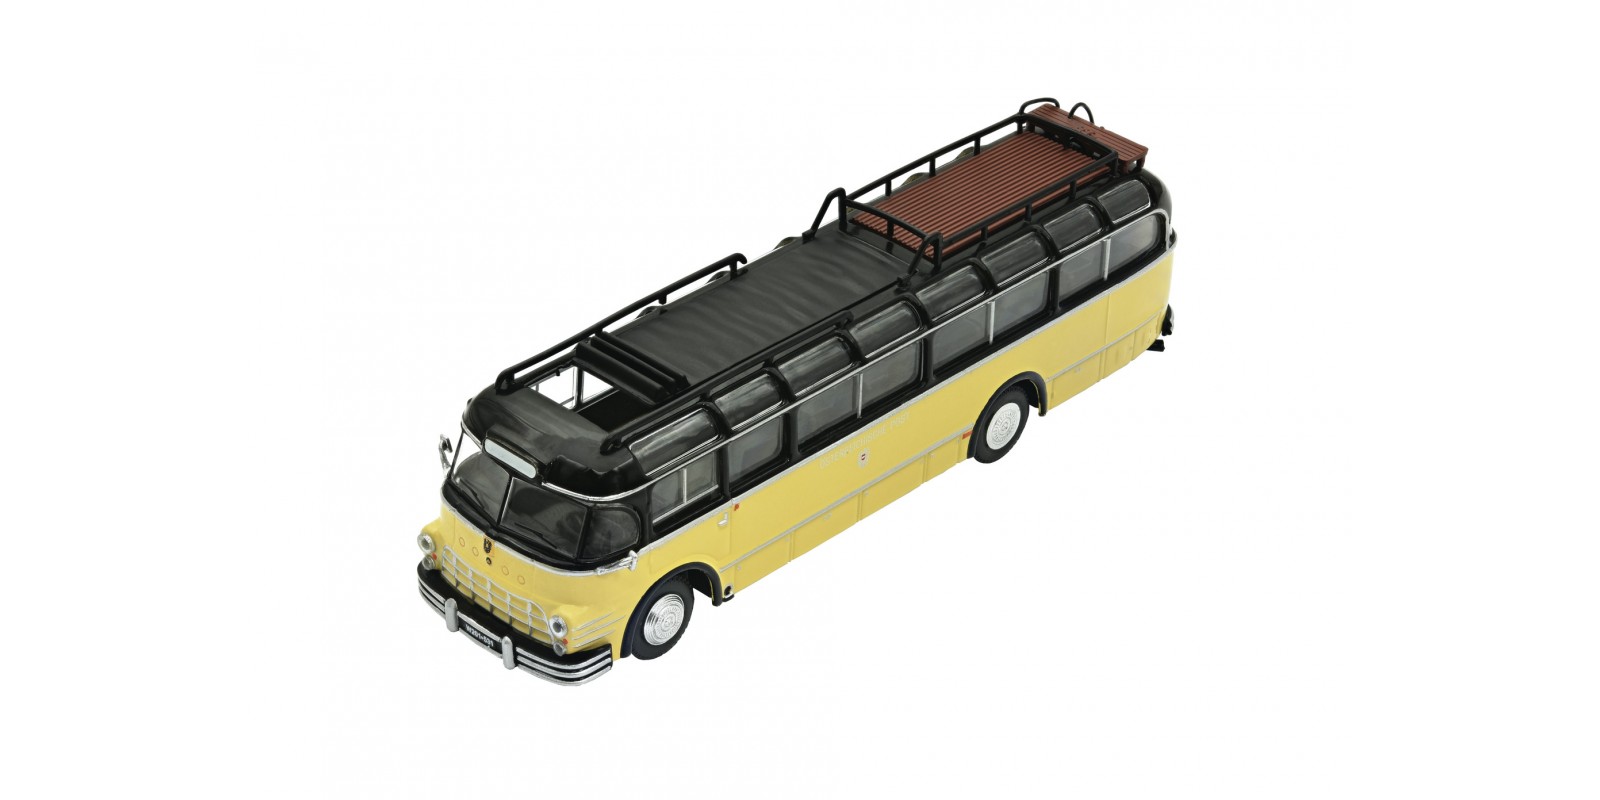 RO05416 - “Saurer” omnibus